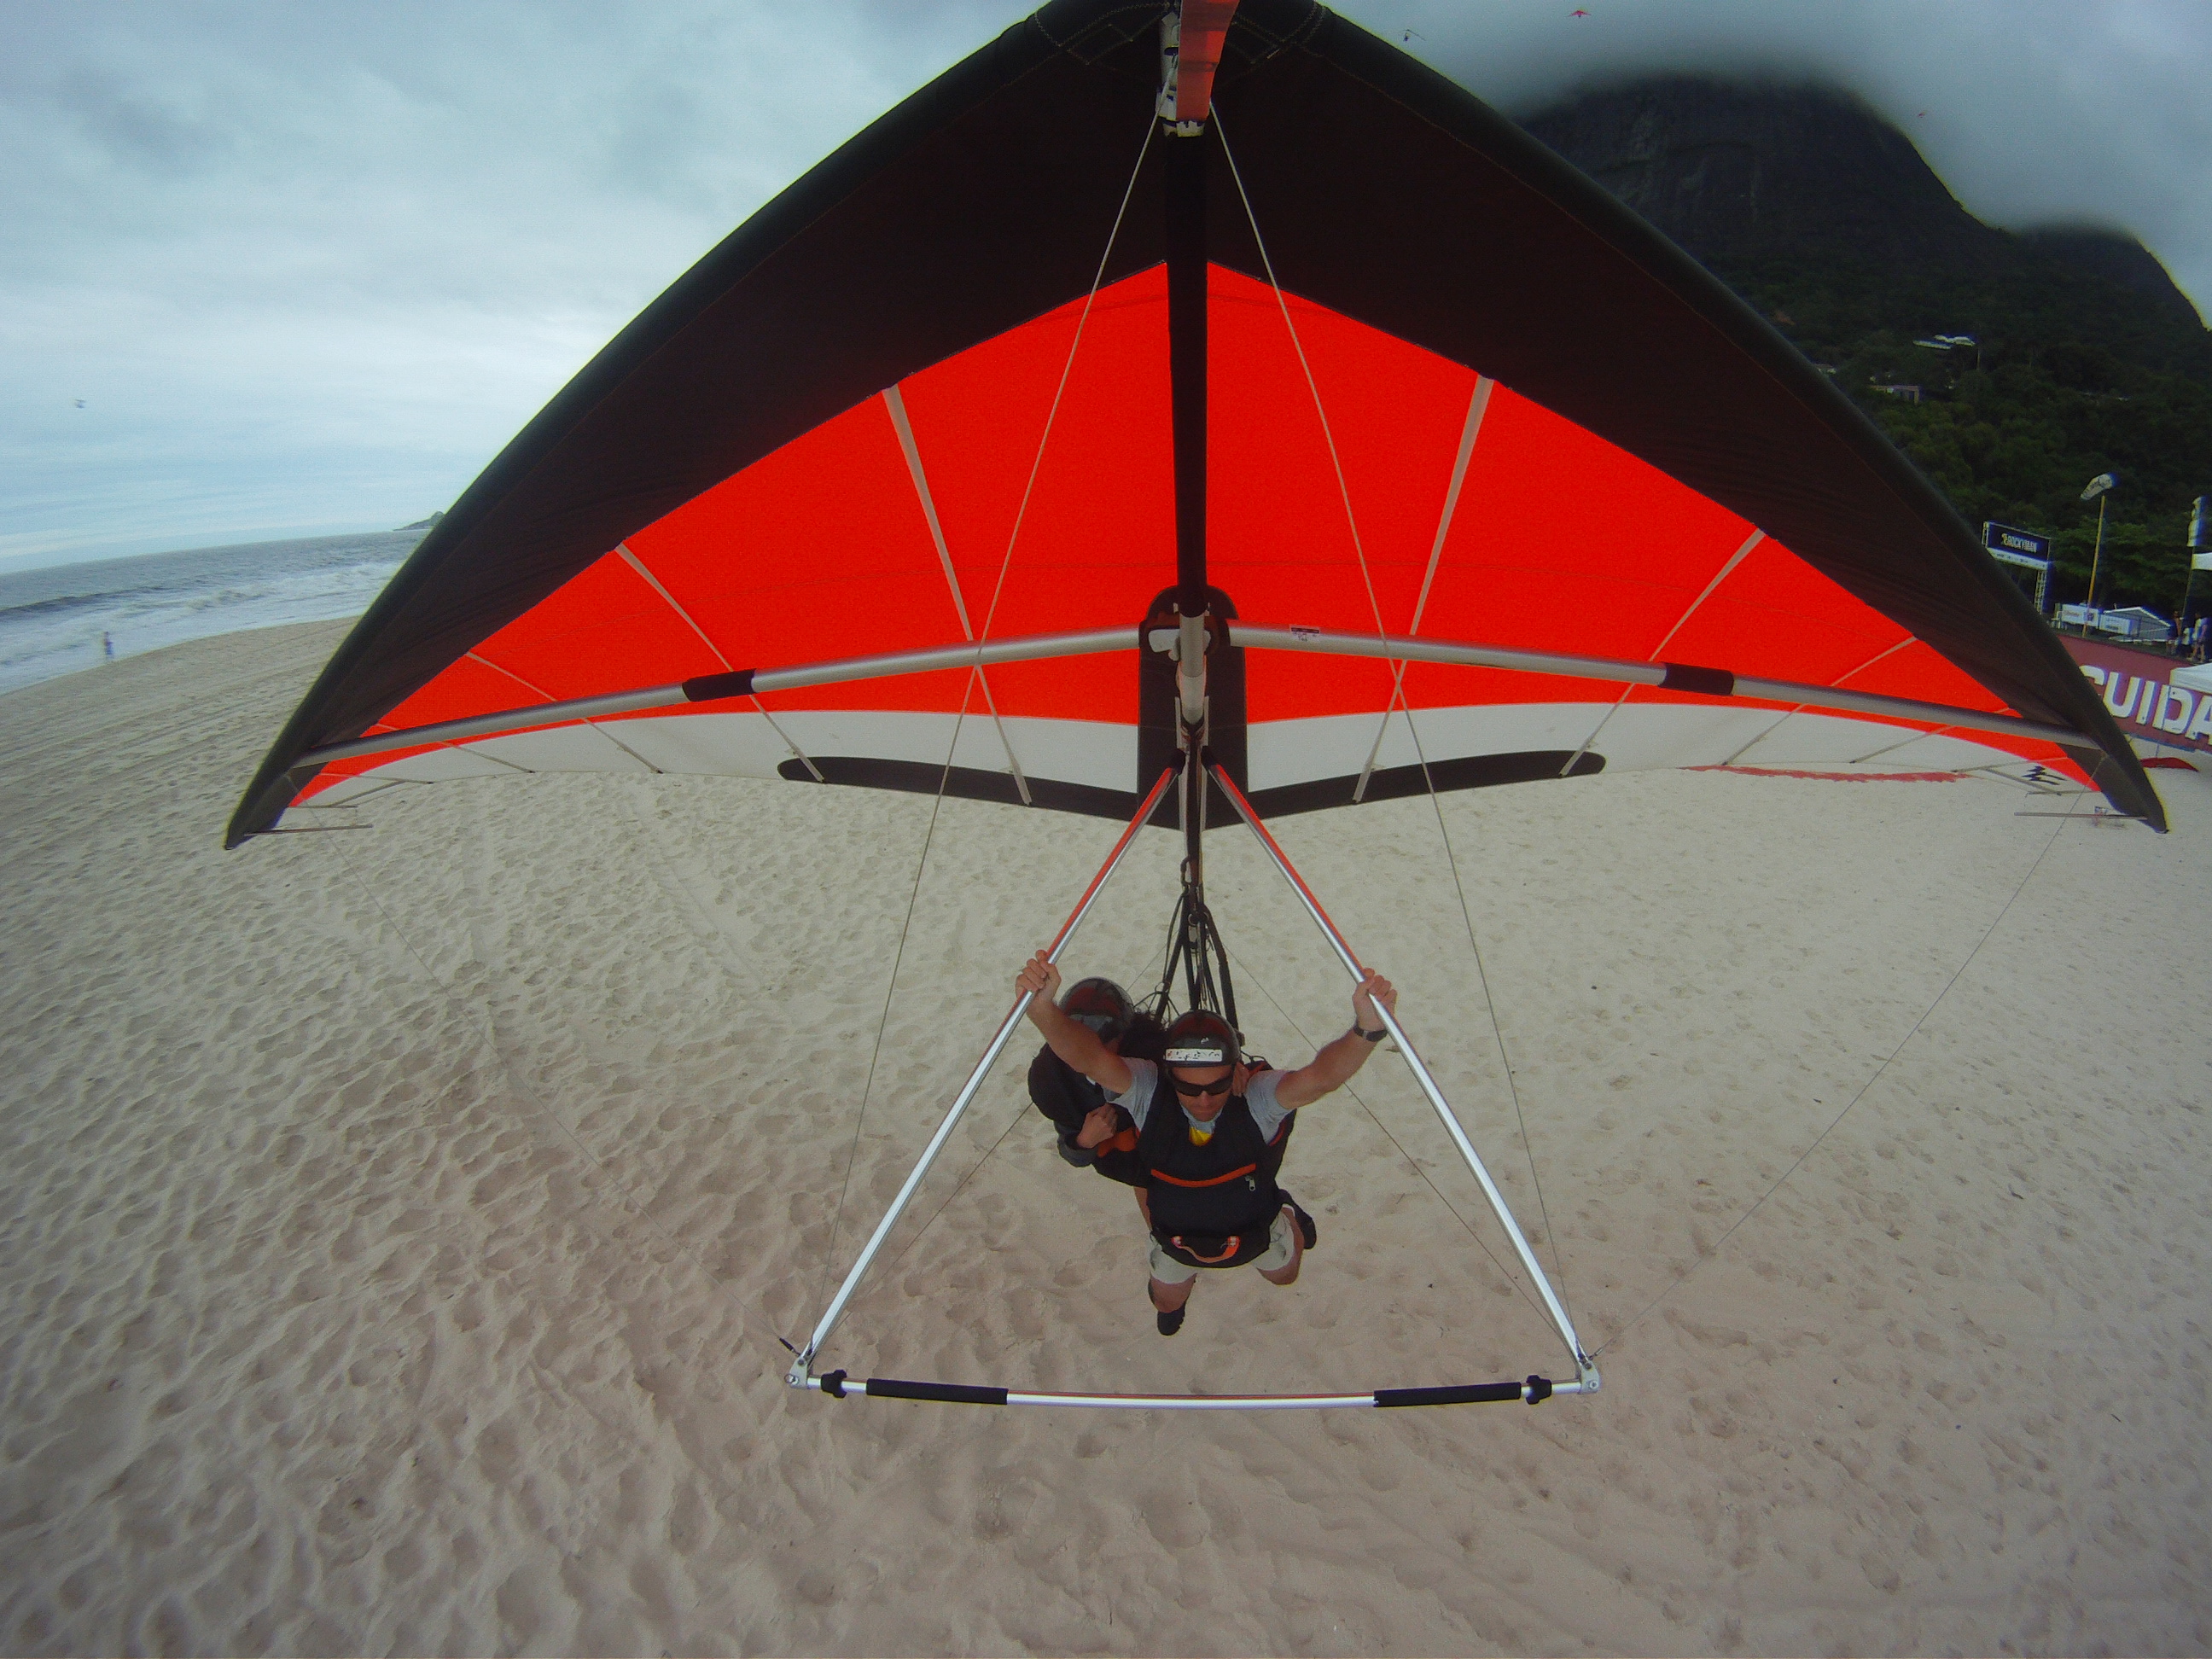 Hang_Glider_landing_on_So_Conrado_Beach_Rio_de_Janeiro.jpg